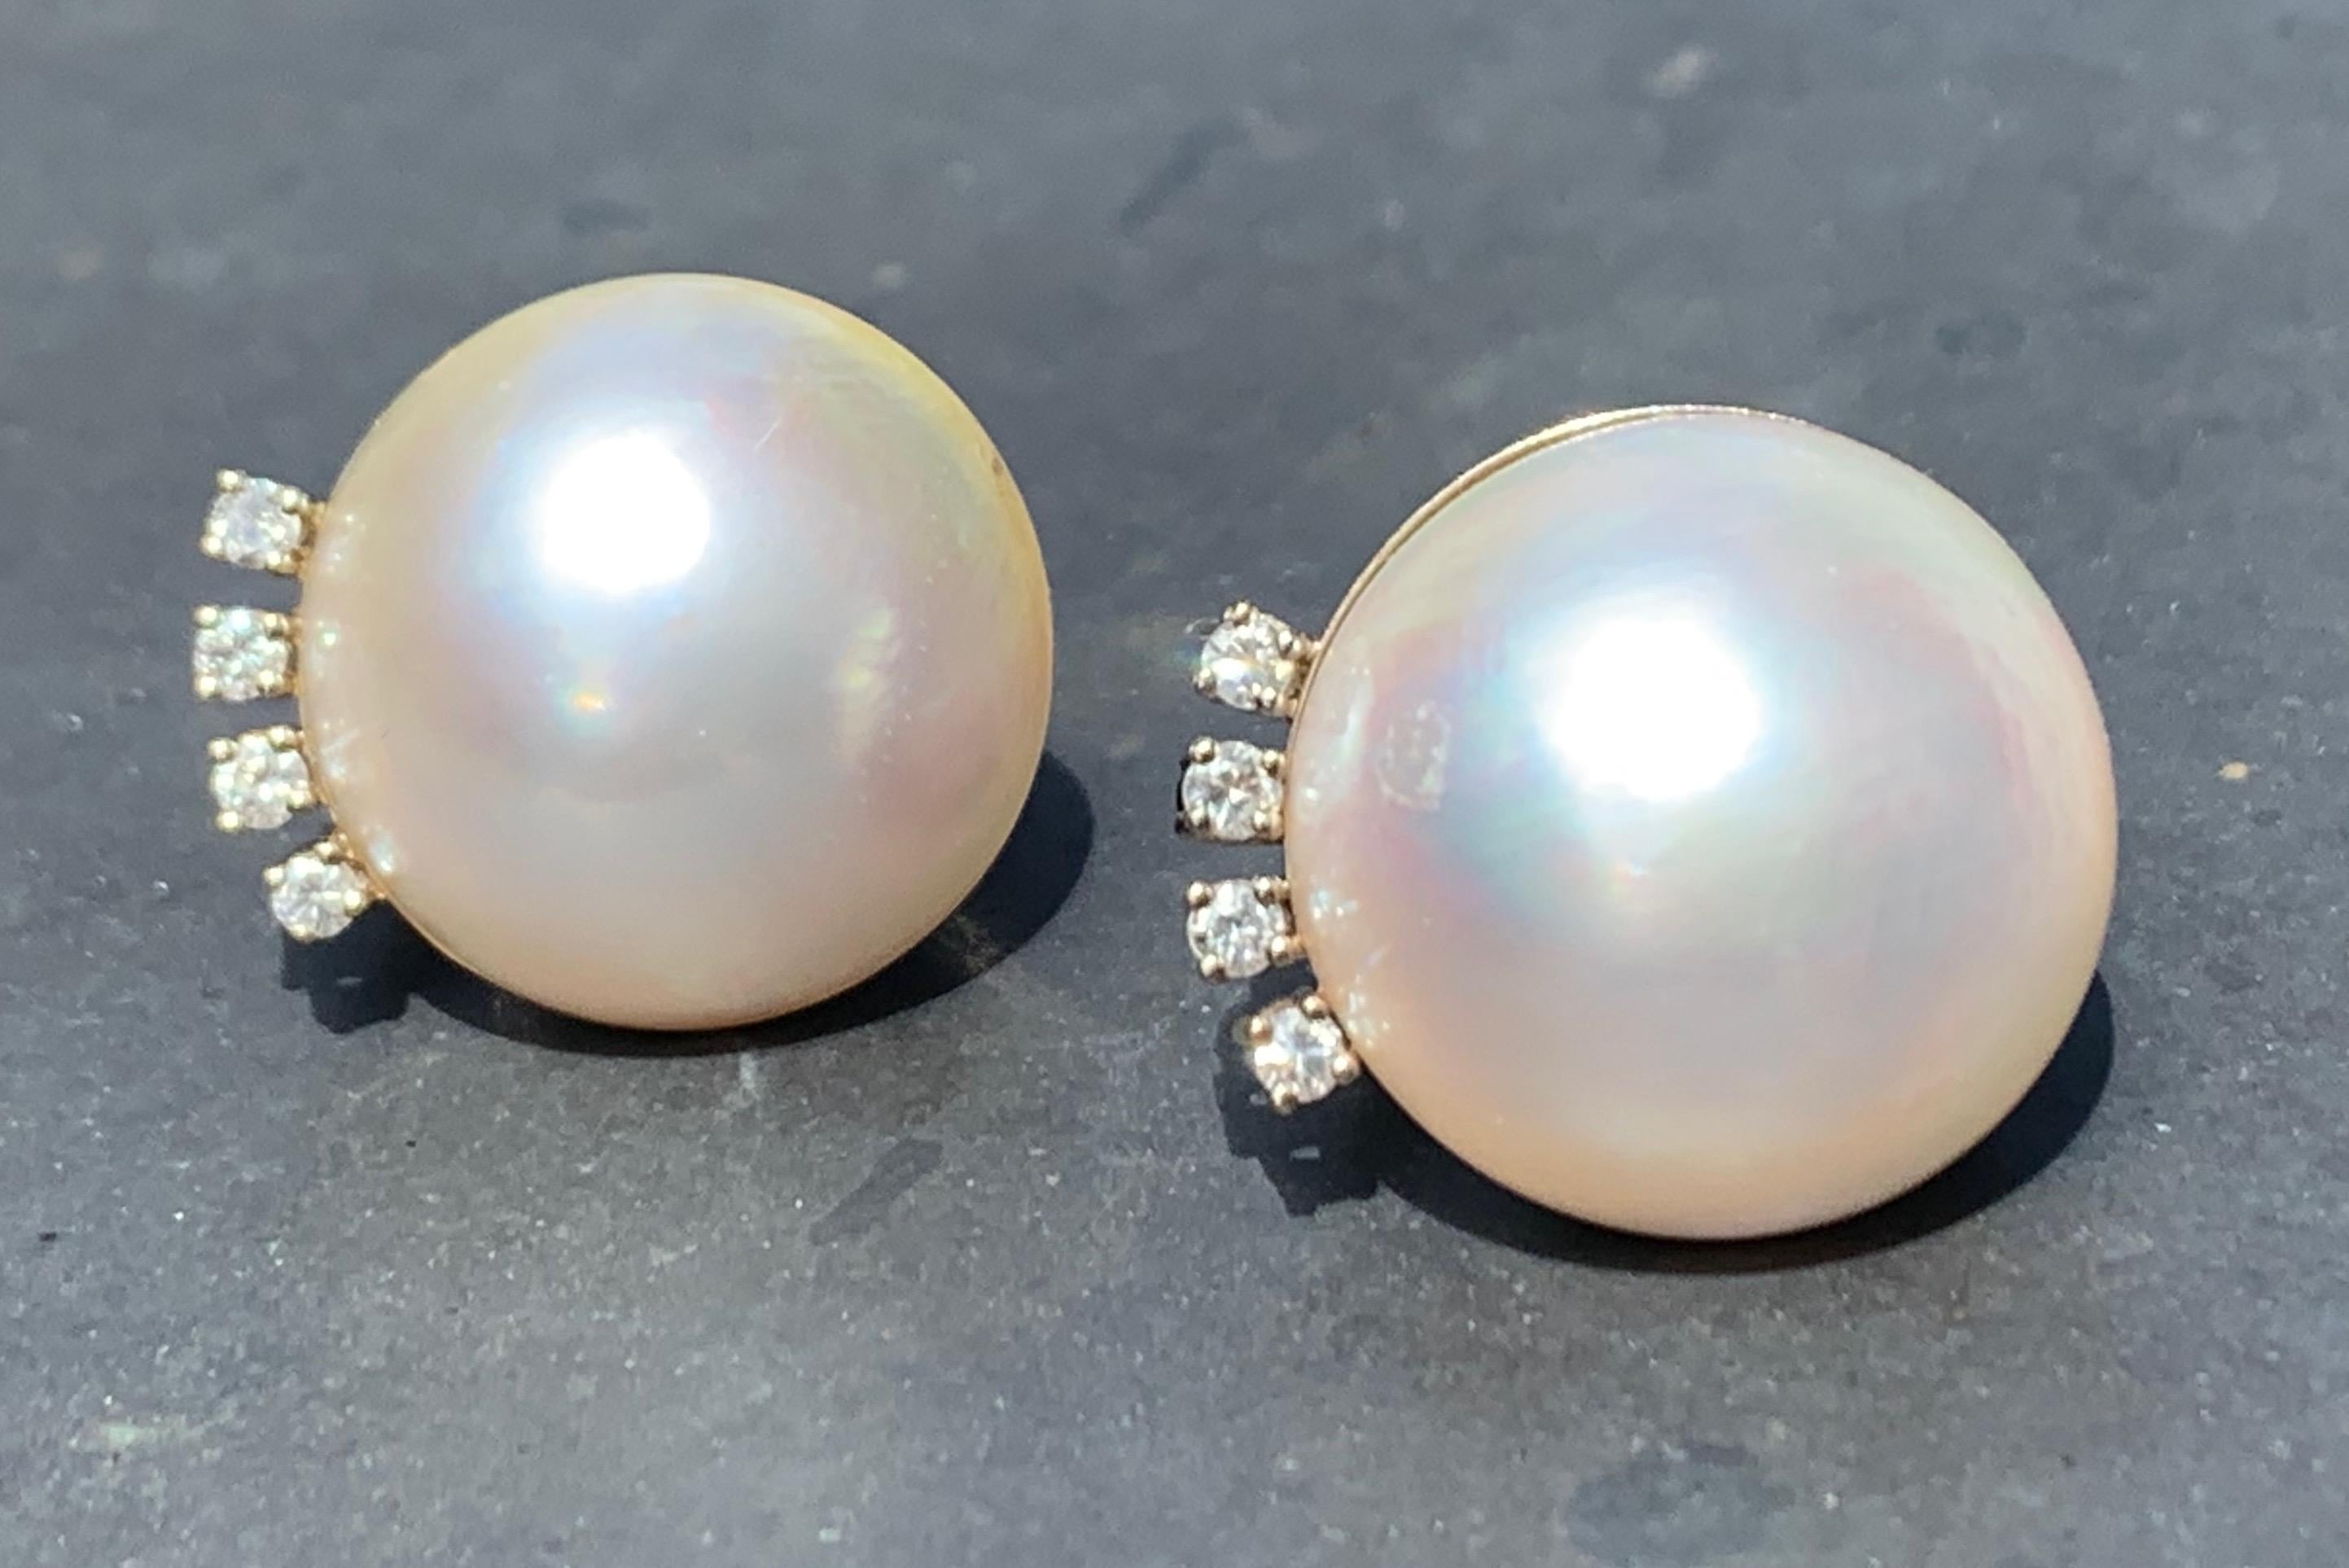 Élégante paire de boucles d'oreilles clip en mabé et diamants. Les boucles d'oreilles ont été fabriquées en 1960 environ en or blanc 18 carats et sont ornées de quatre diamants ronds sertis en griffe. Les perles ont un diamètre de 1,6 cm.
